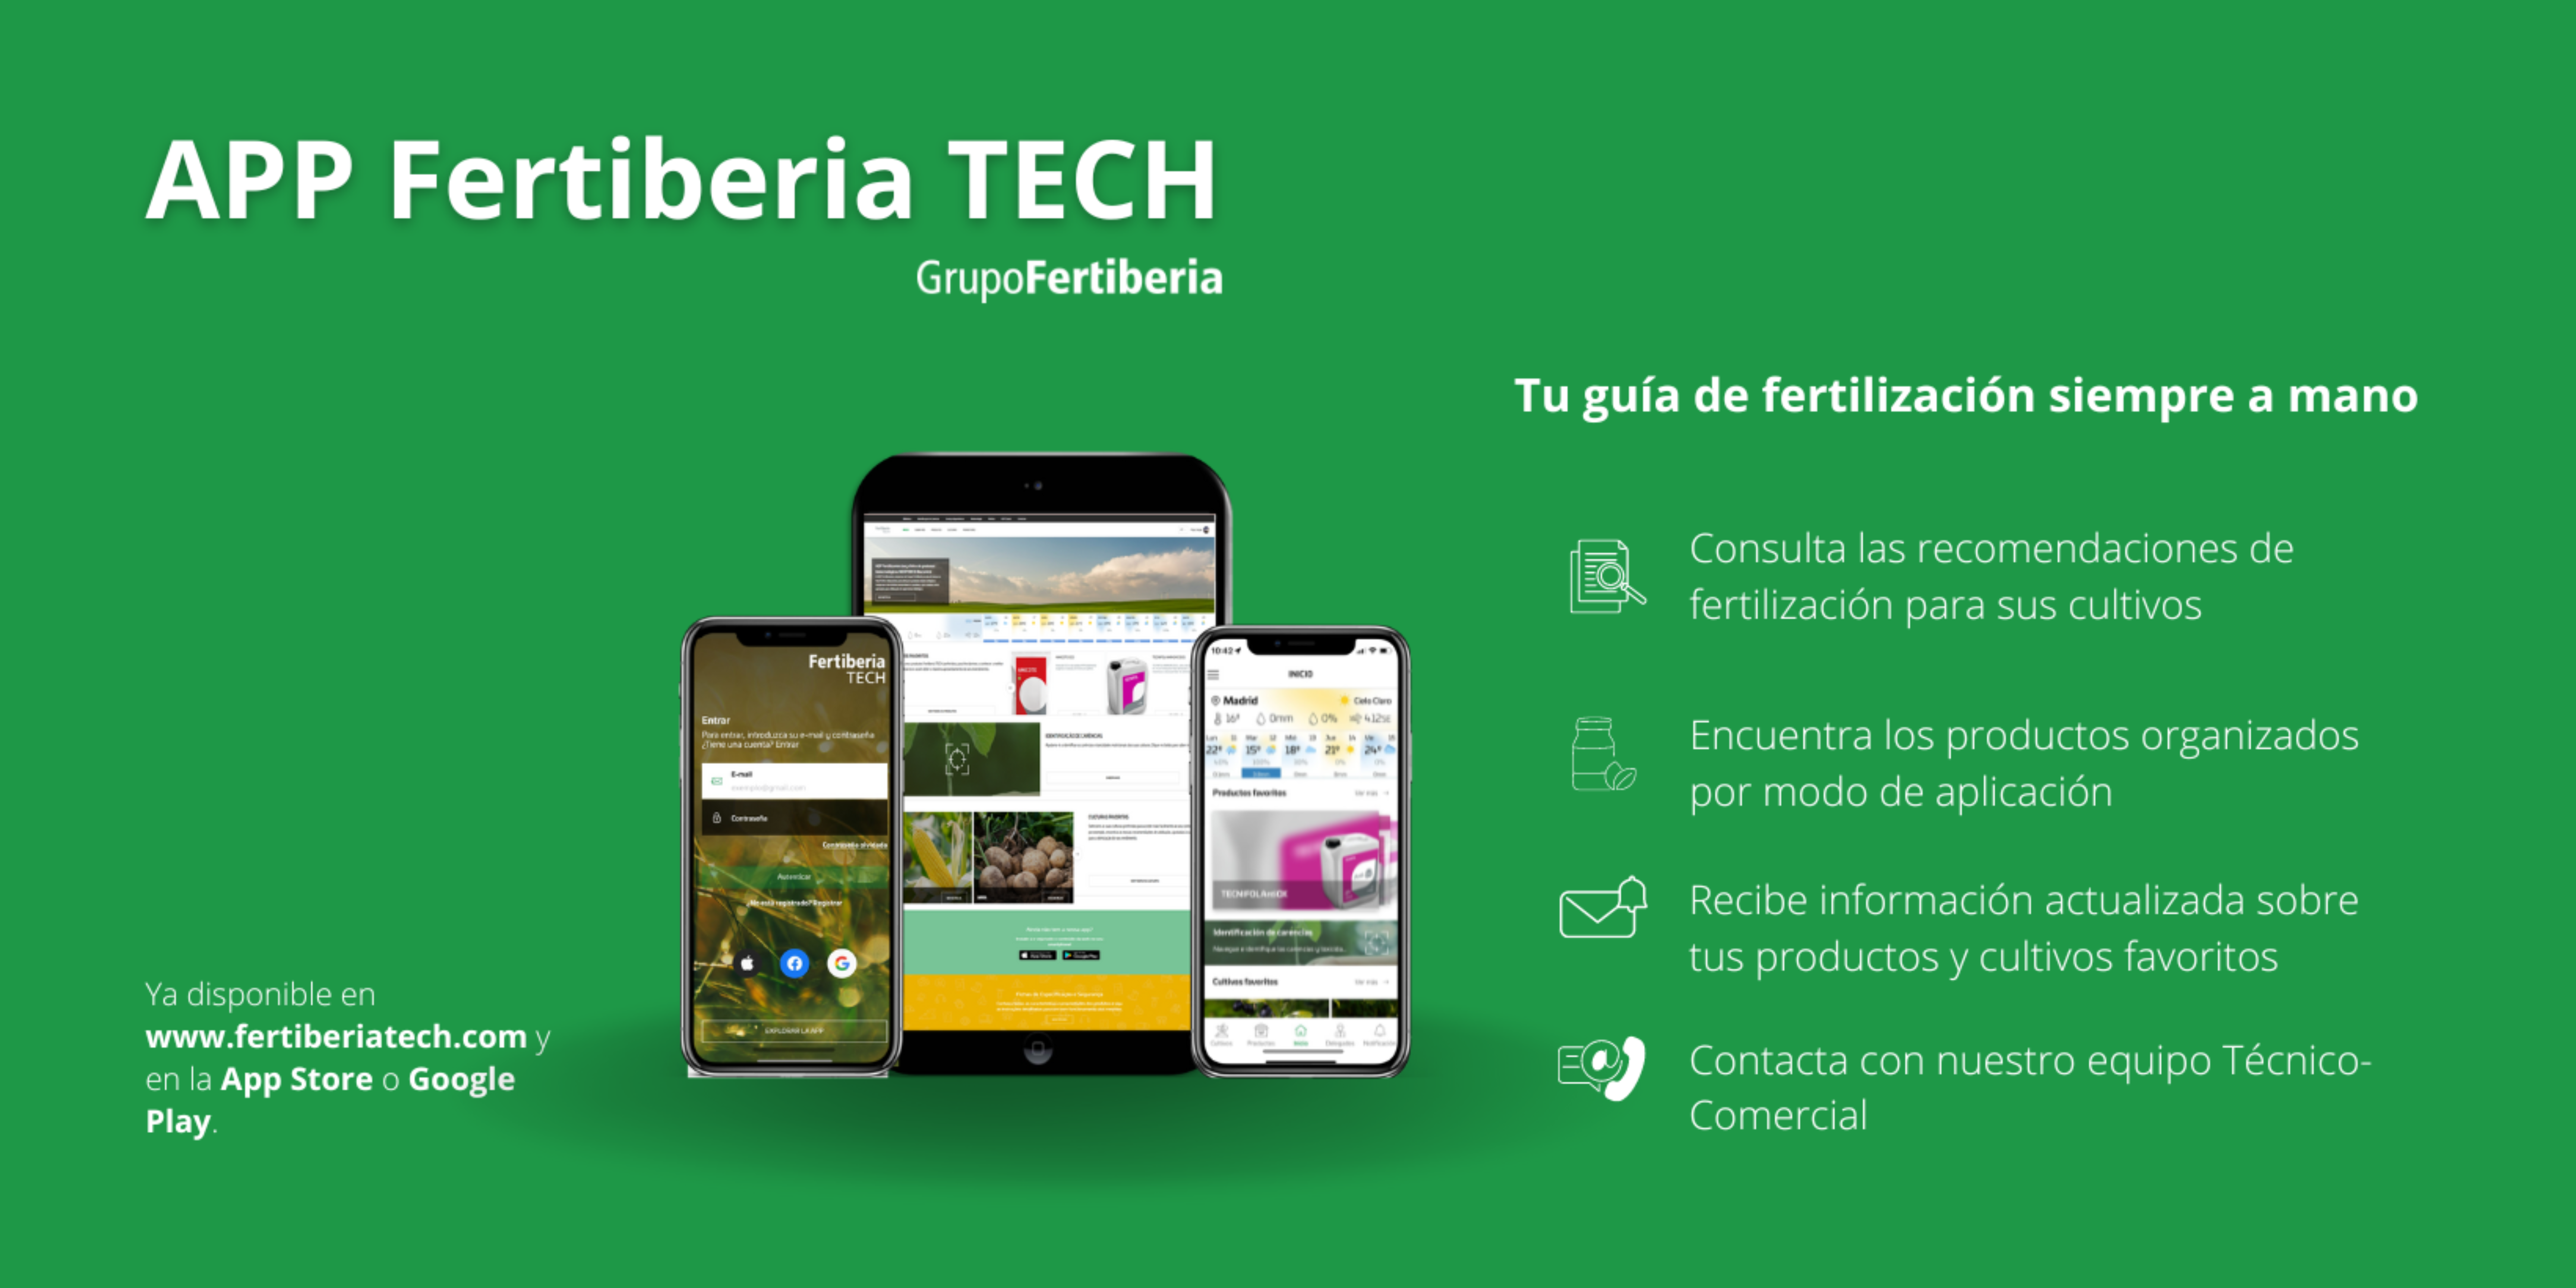 Fertiberia TECH lanza una nueva aplicación 